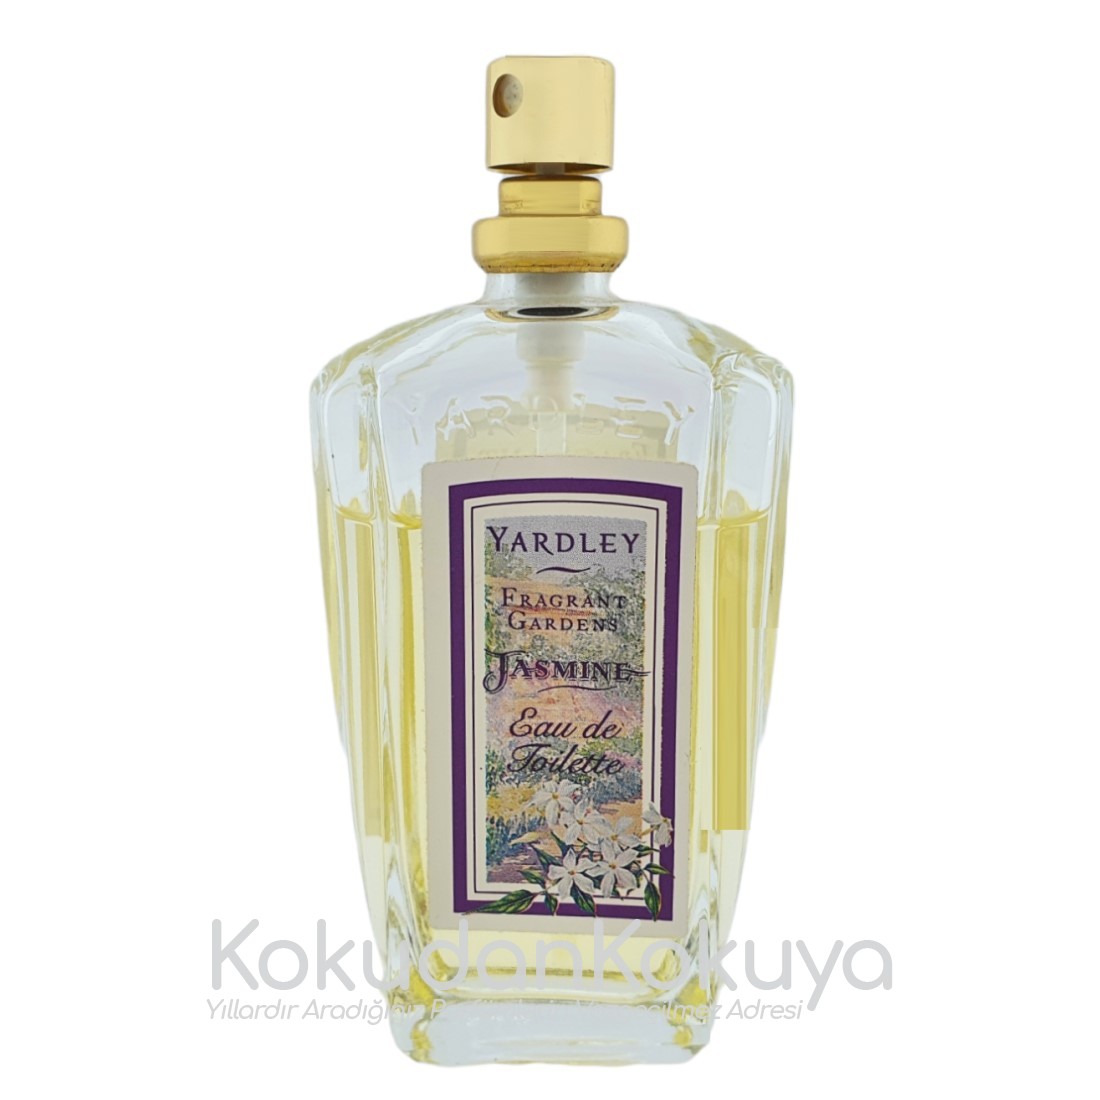 YARDLEY Jasmine (Vintage) Parfüm Kadın 50ml Eau De Toilette (EDT) Sprey 